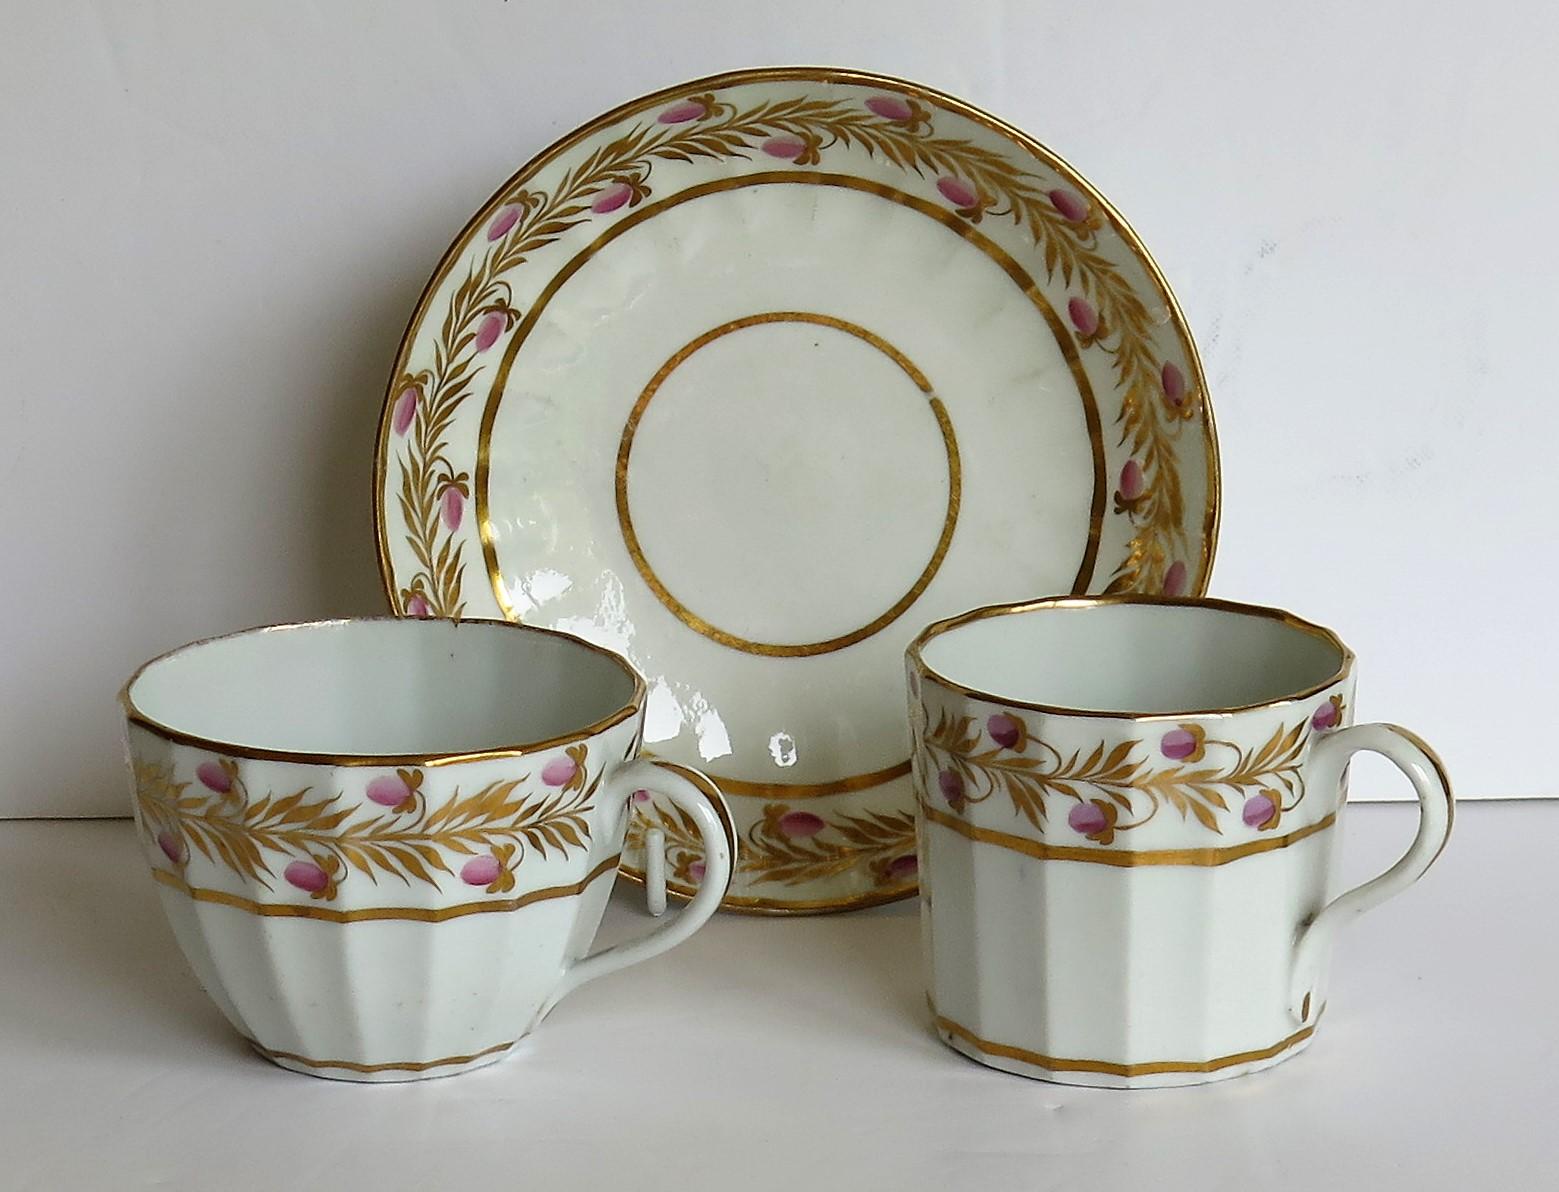 Il s'agit d'un trio de porcelaine ancienne comprenant une boîte à café à cannelures verticales, une tasse à thé et une soucoupe, le tout dans un motif peint à la main et doré, que nous attribuons à CIRCA, John Rose & Co, Shropshire, Angleterre,